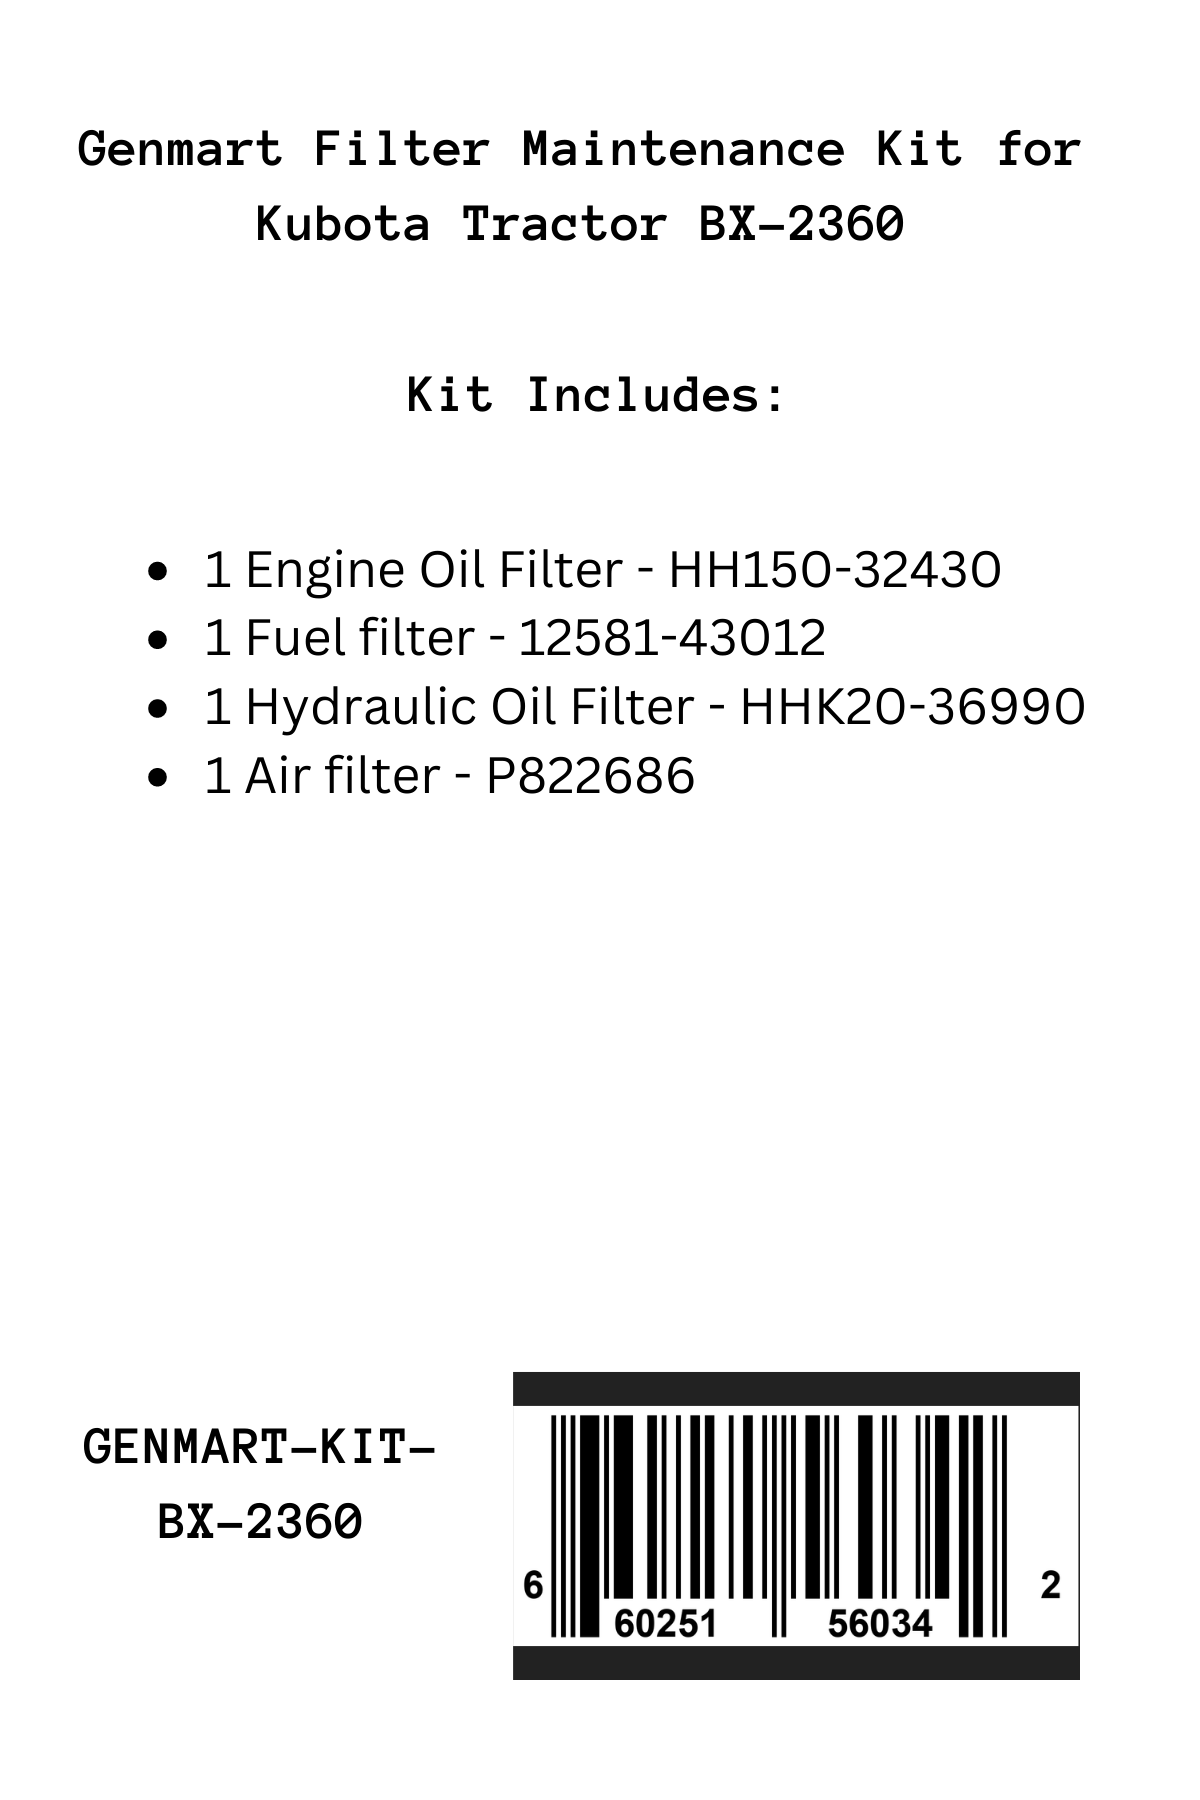 Genmart Maintenance Kit for Kubota Tractor BX-2360